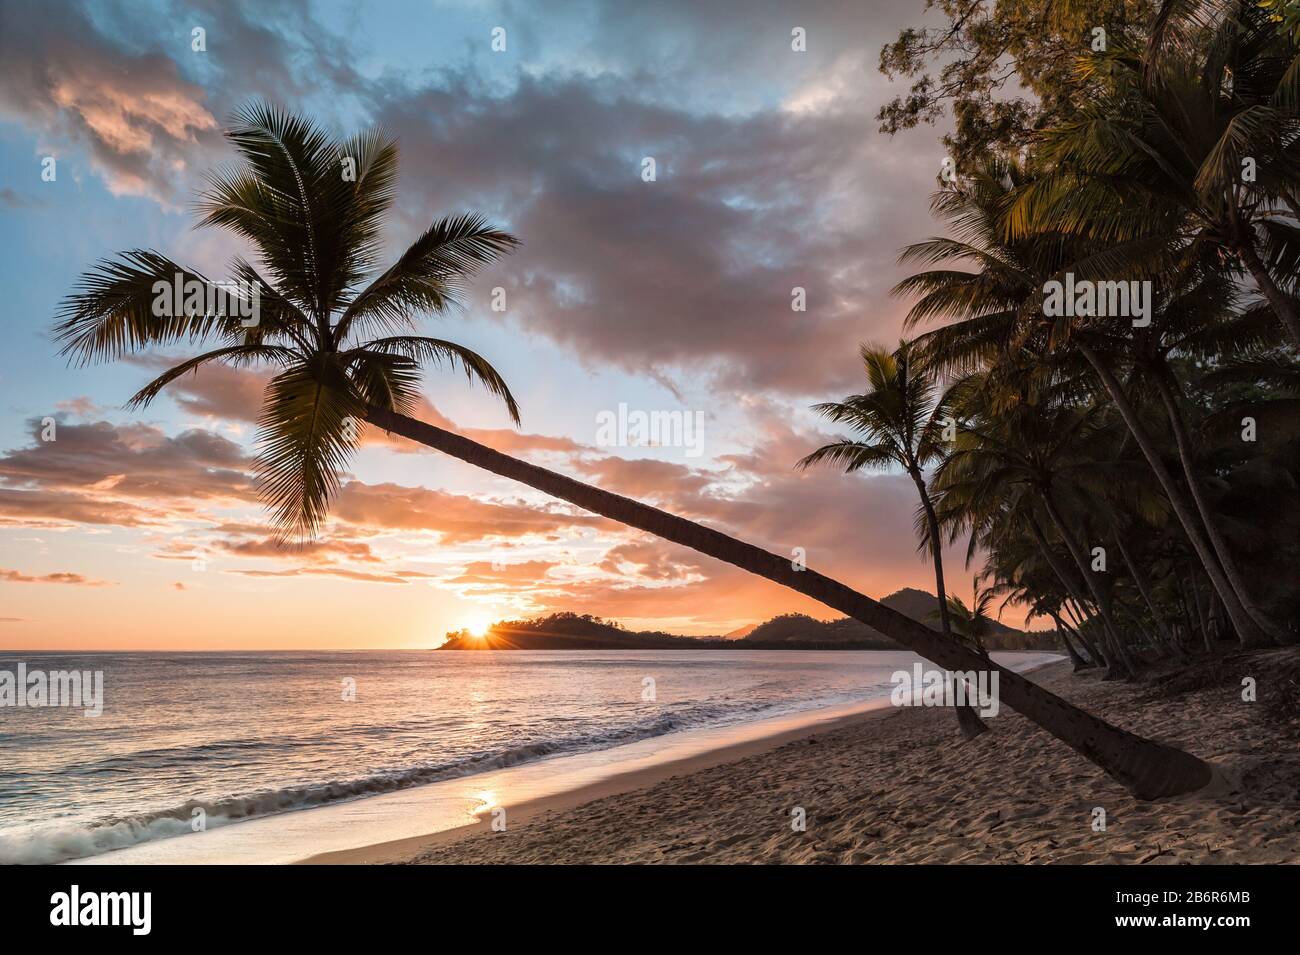 Eine kultige Kokospalme hängt schräg über einer typischen Sonnenaufgang-, tropischen Strandszene mit Insel im Hintergrund und Kokospalmenlinie. Stockfoto